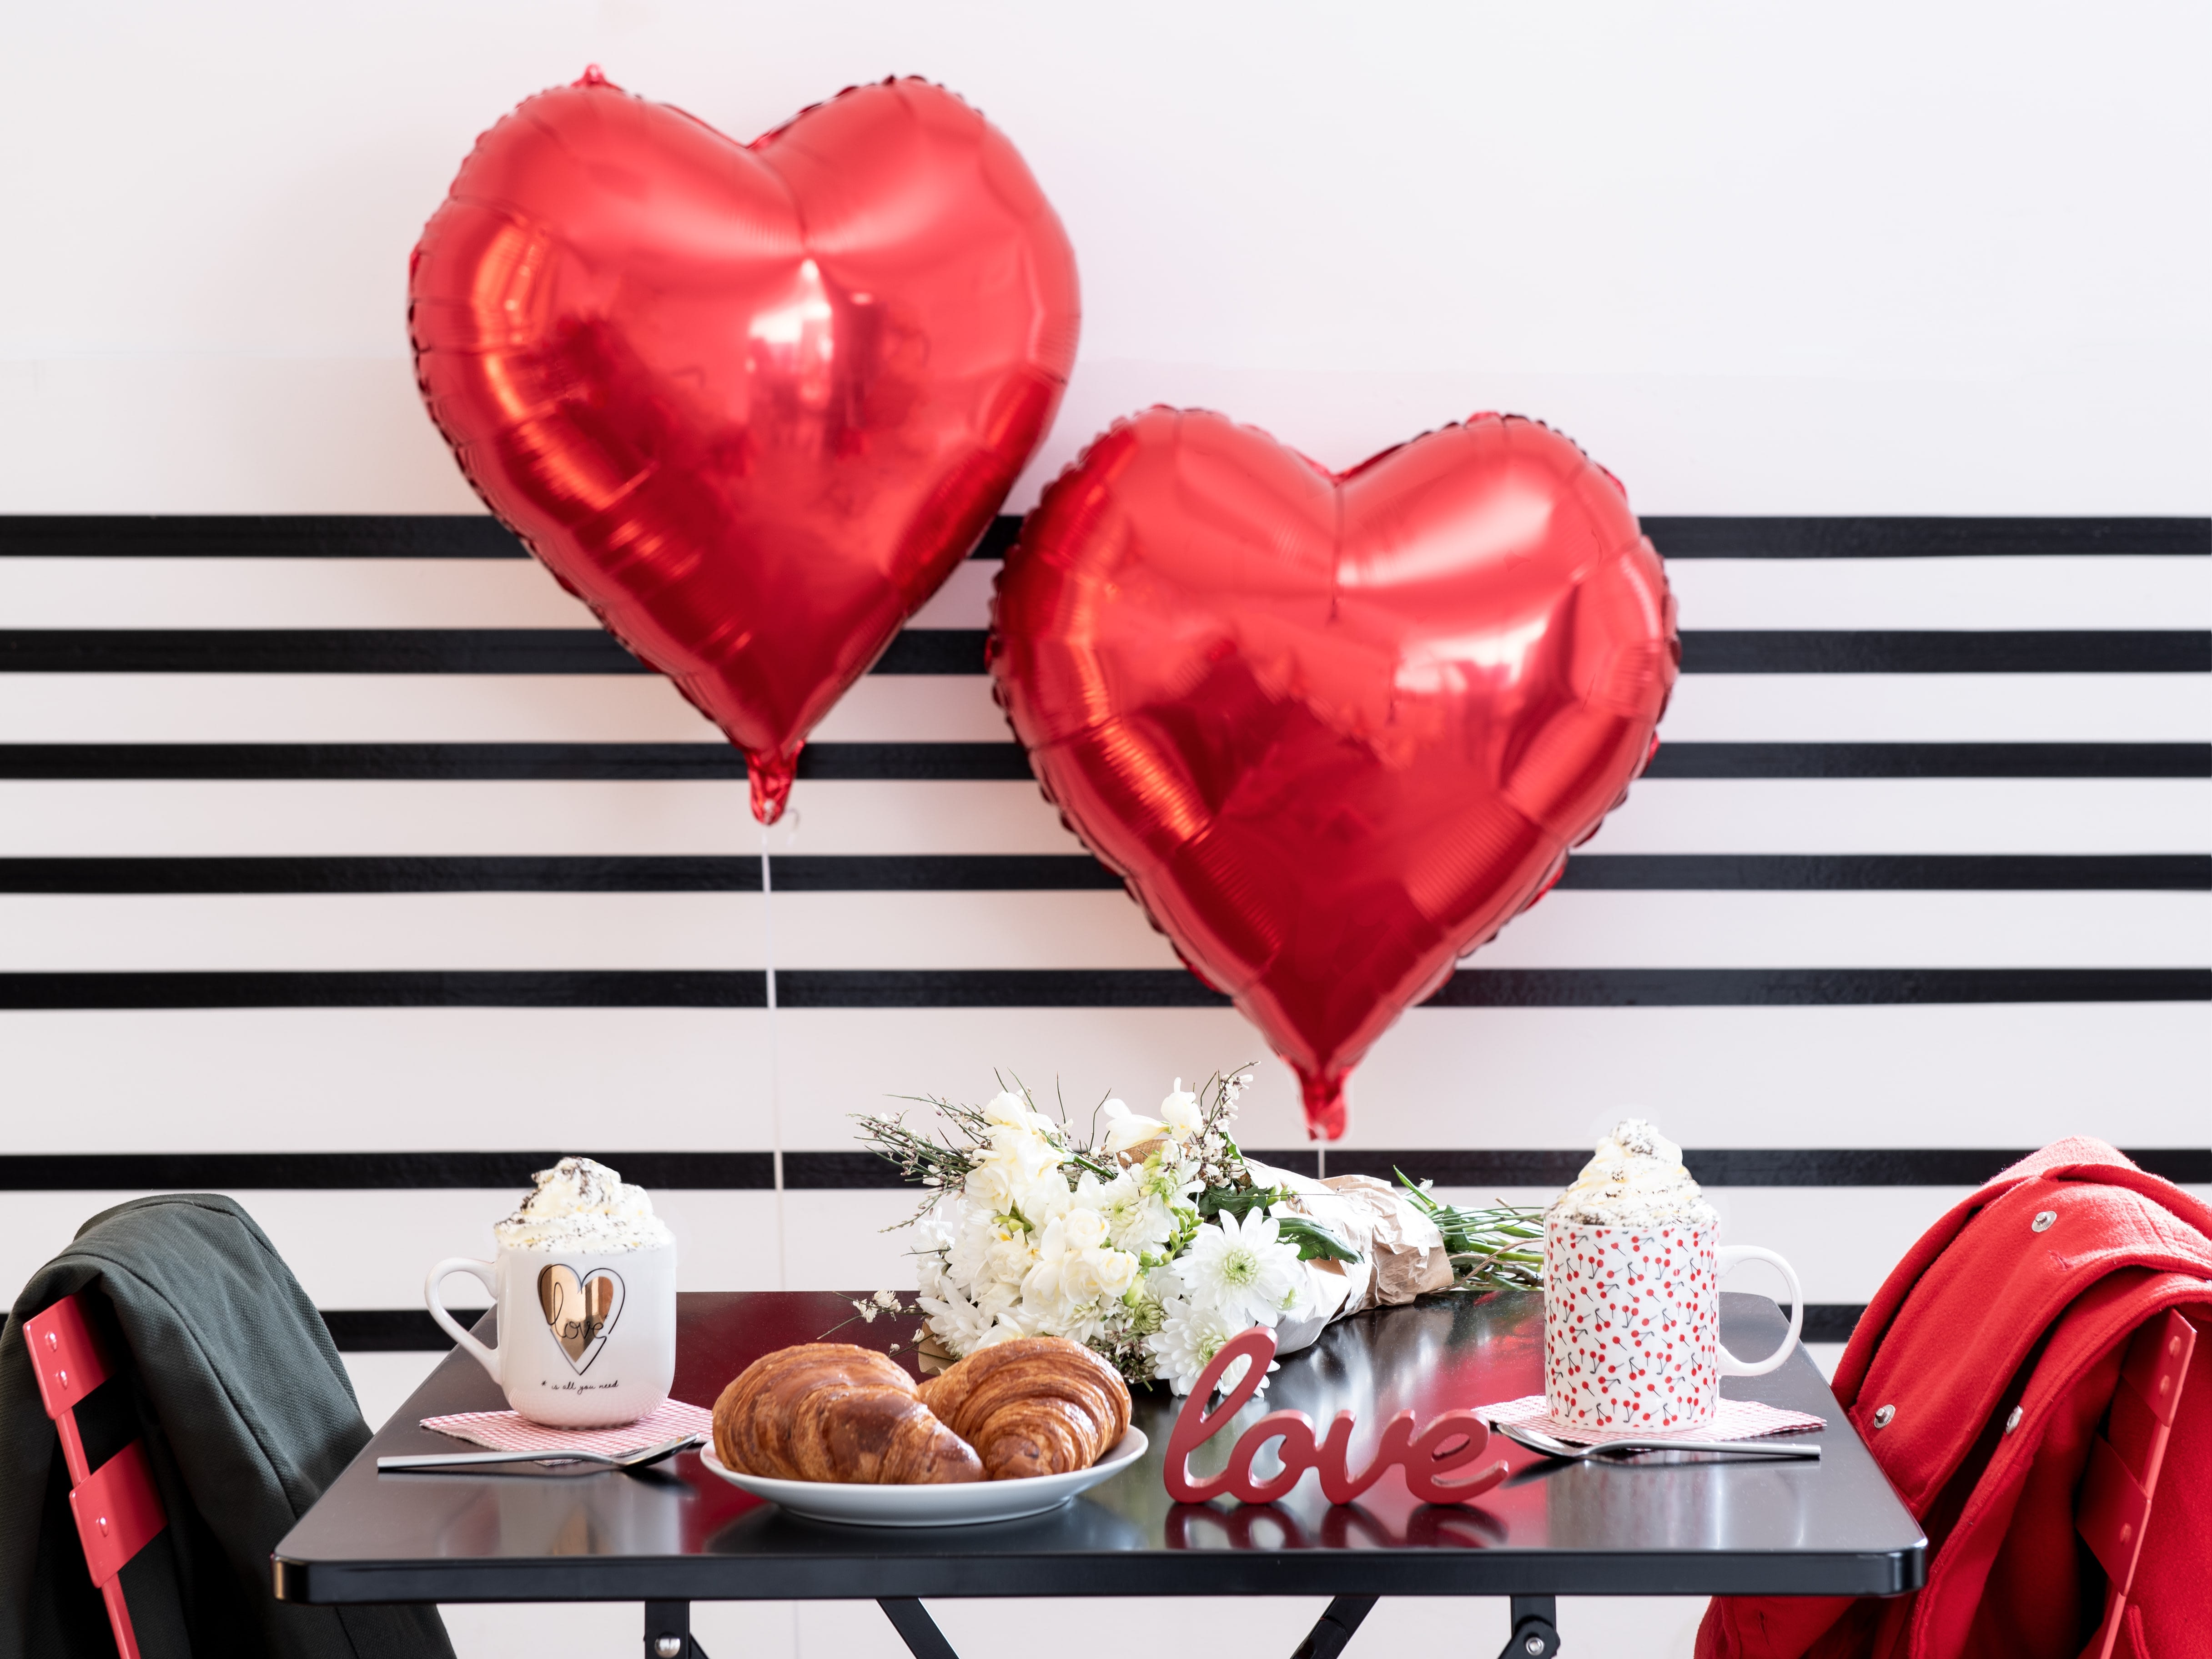 Saint-Valentin 2020 : nos idées cadeaux romantiques